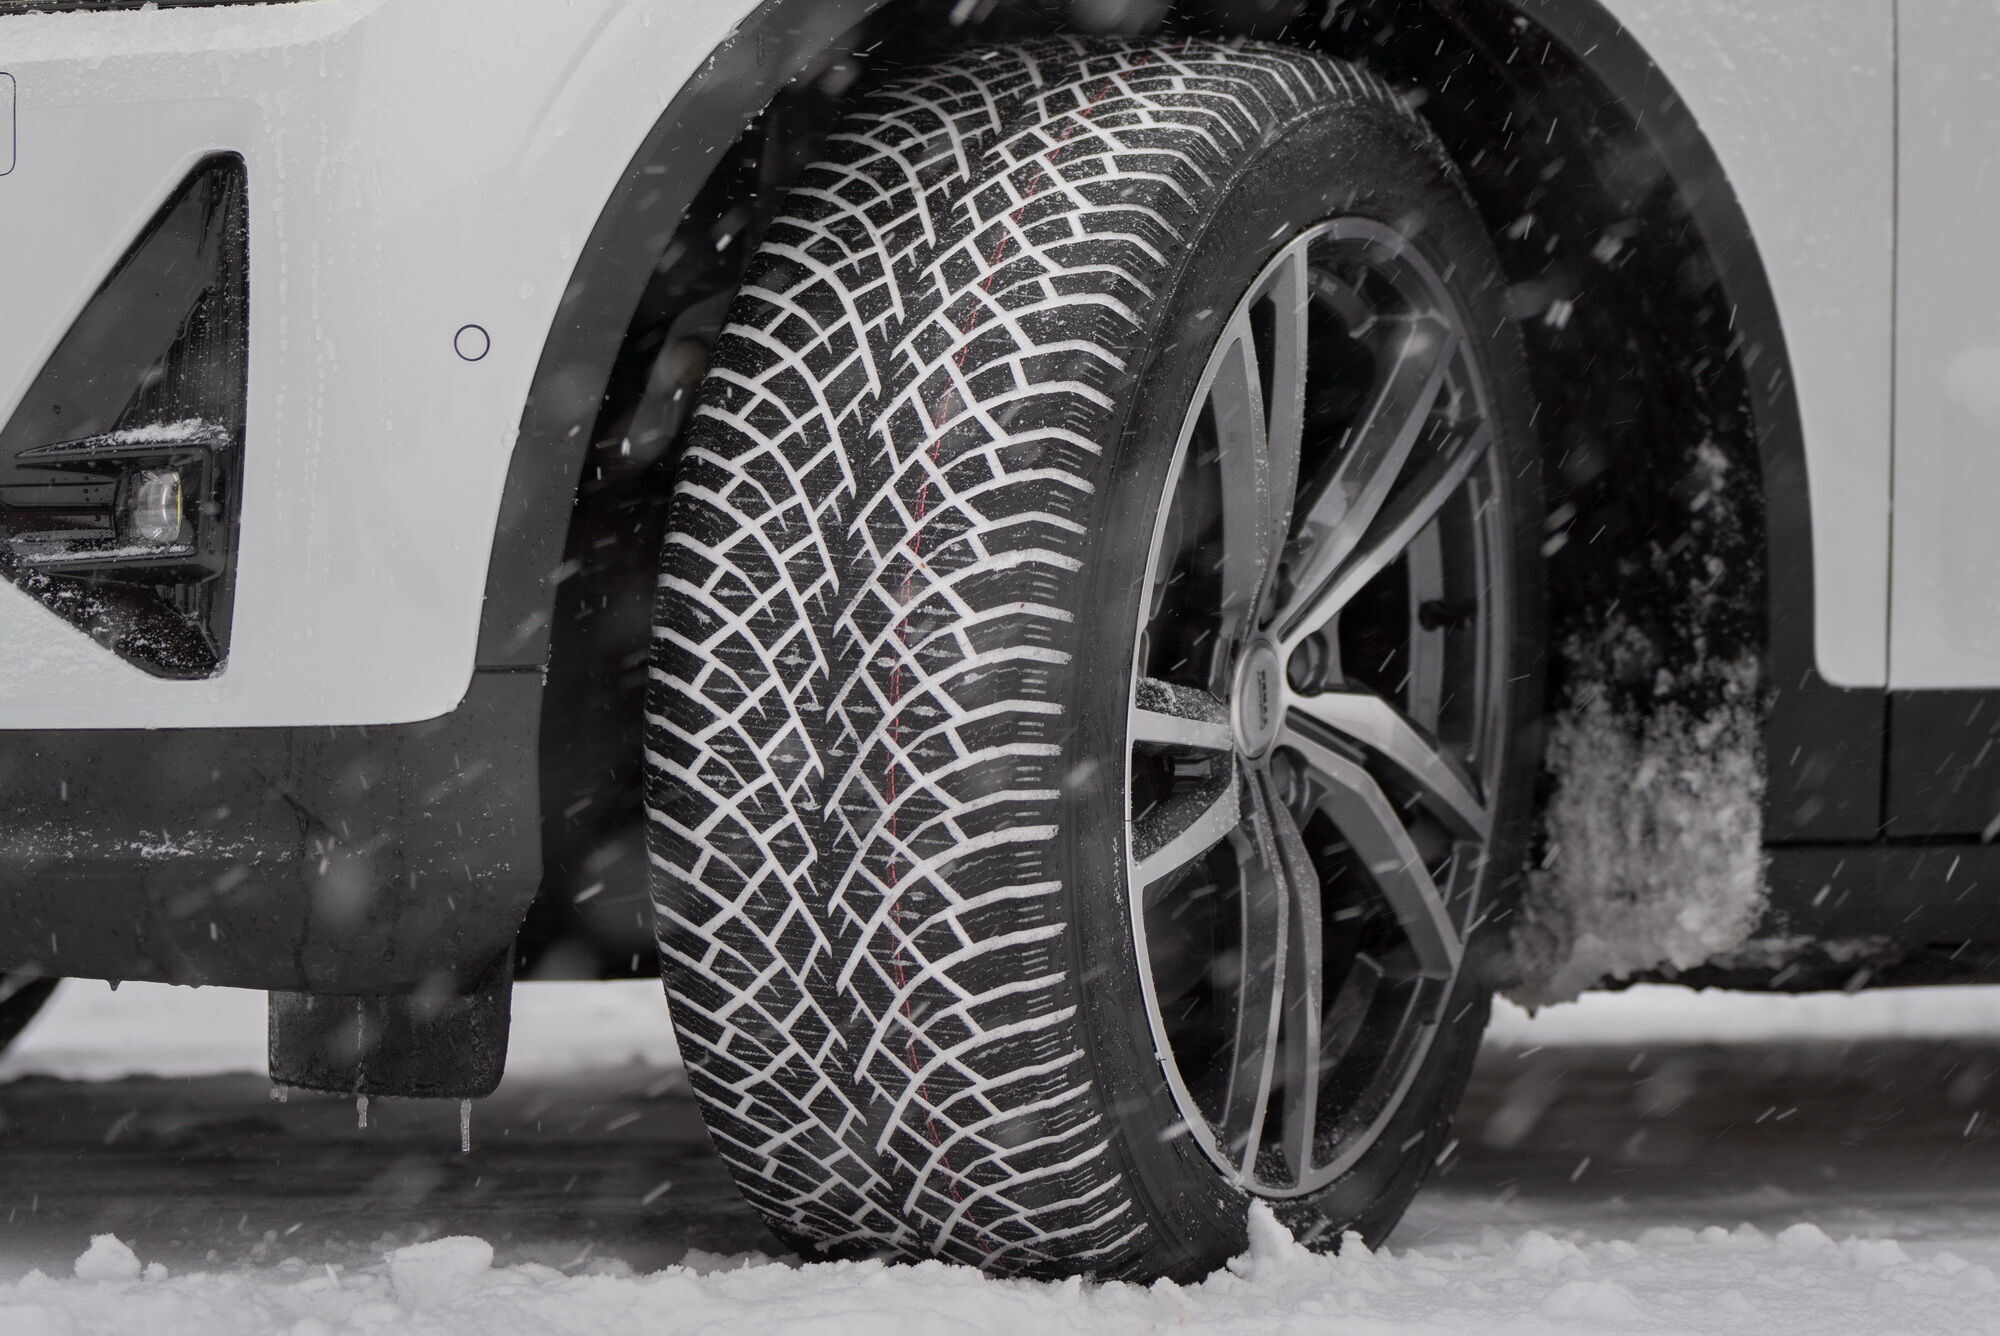 Зимова шина Hakkapeliitta R5 призначена для легкових автомобілів